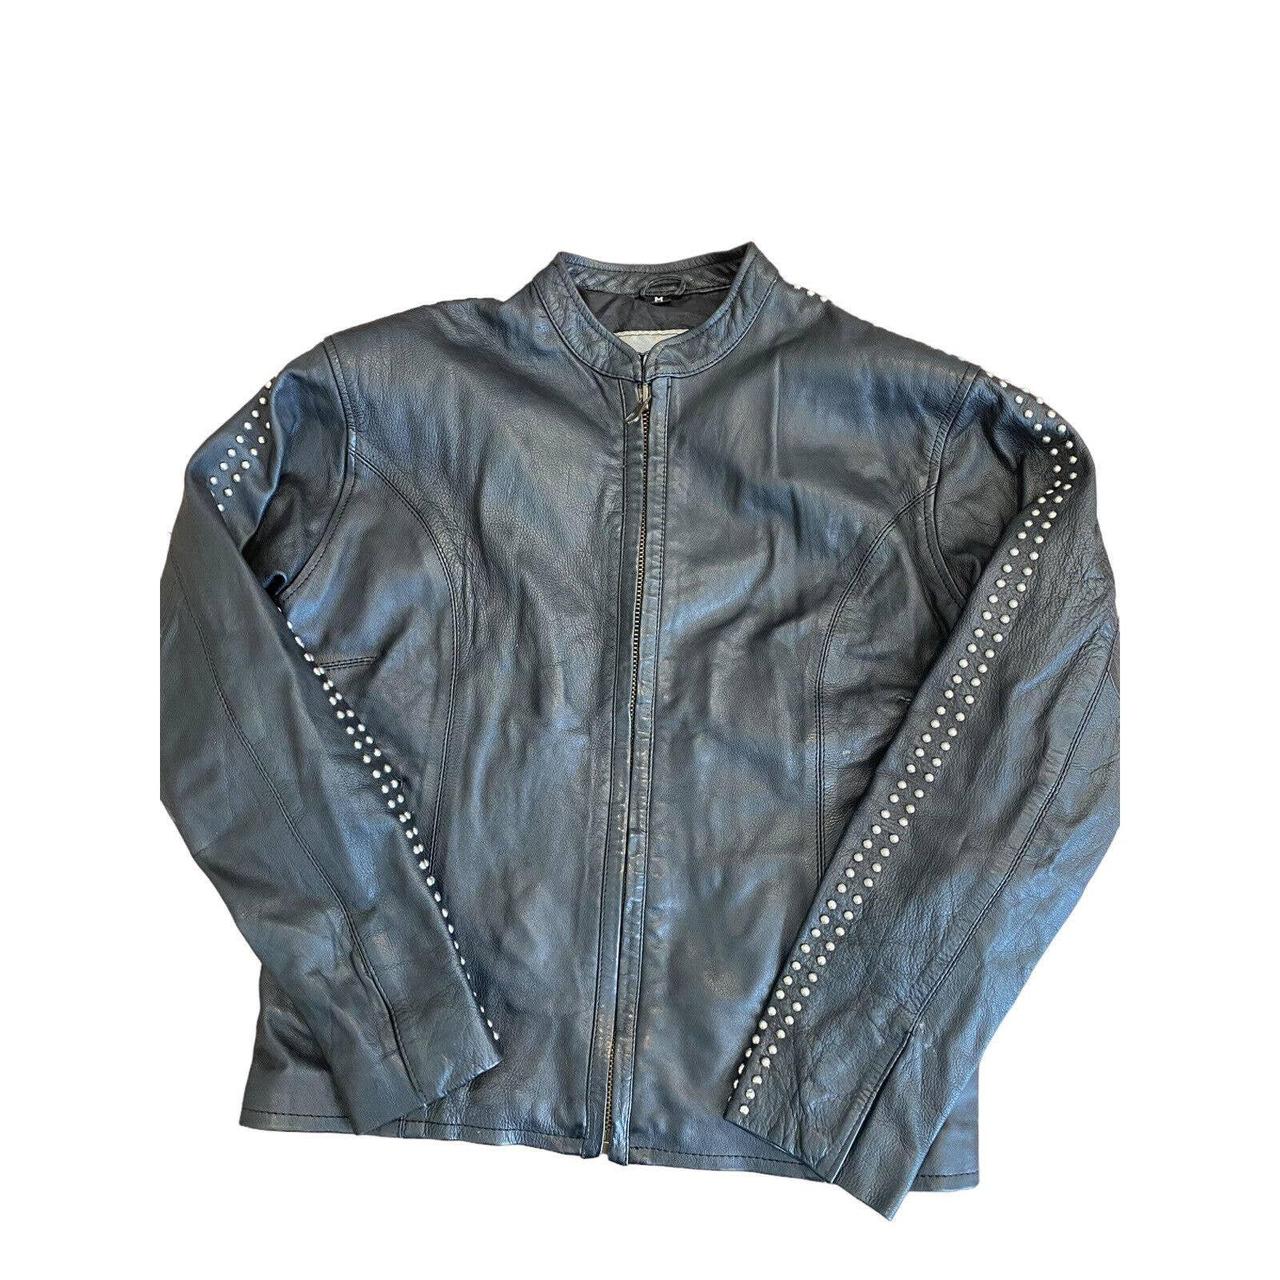 Vintage studded biker jacket black leather women’s... - Depop